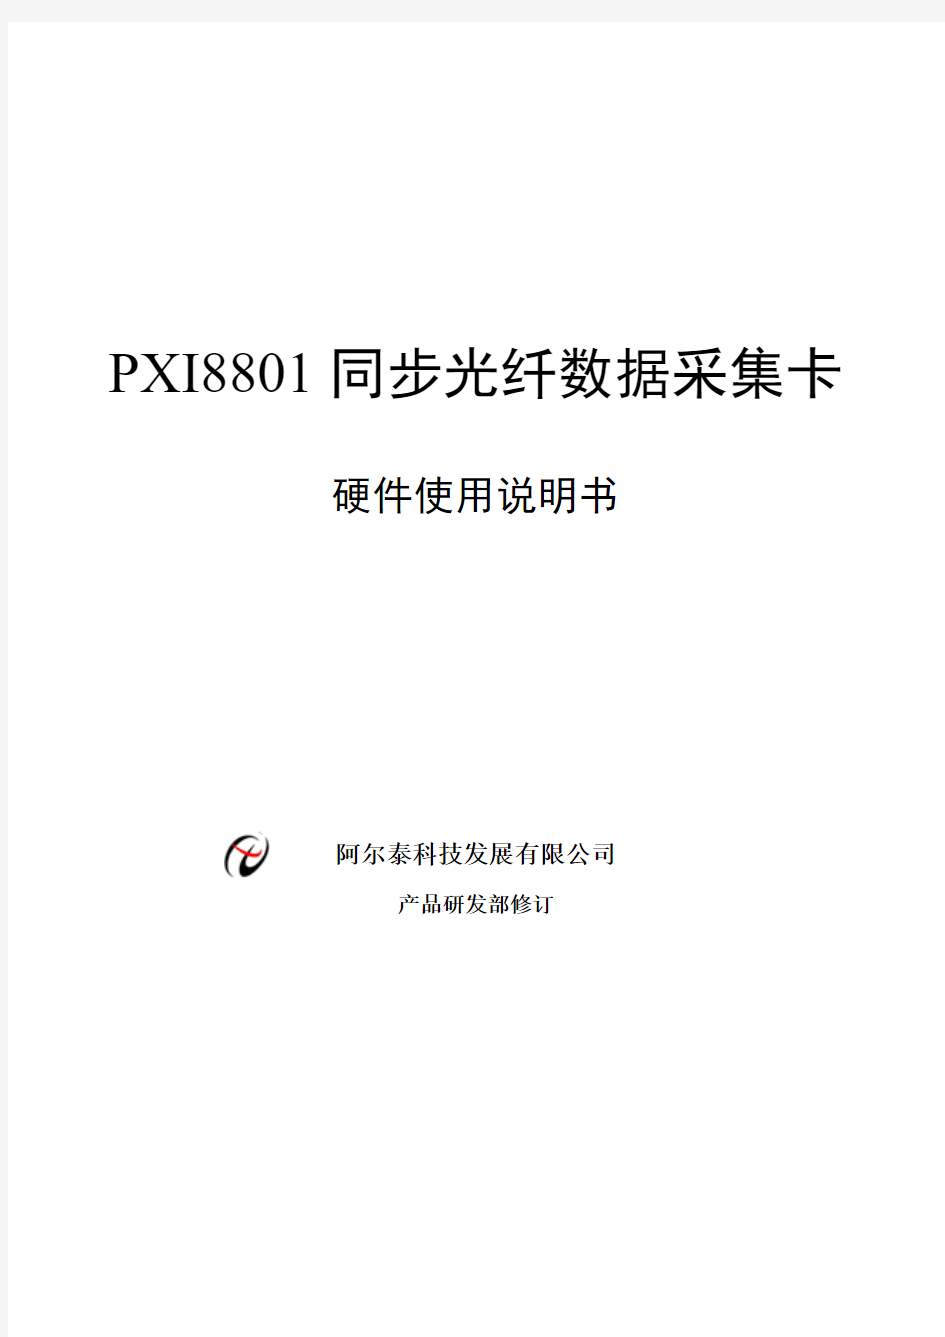 PXI8801同步光纤数据采集卡